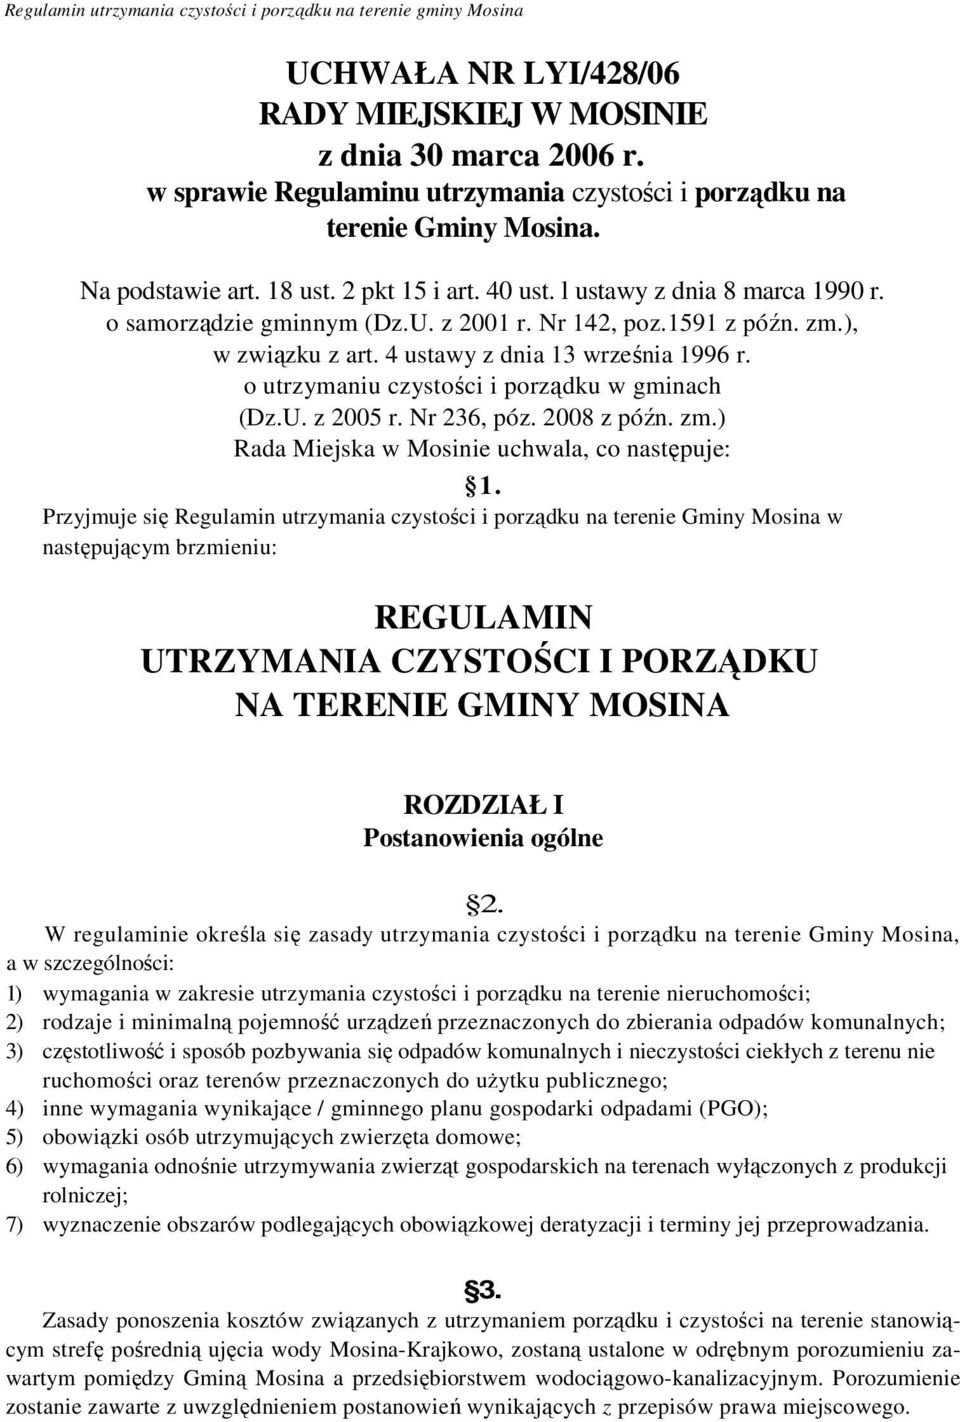 Nr 142, poz.1591 z późn. zm.), w związku z art. 4 ustawy z dnia 13 września 1996 r. o utrzymaniu czystości i porządku w gminach (Dz.U. z 2005 r. Nr 236, póz. 2008 z późn. zm.) Rada Miejska w Mosinie uchwala, co następuje: 1.